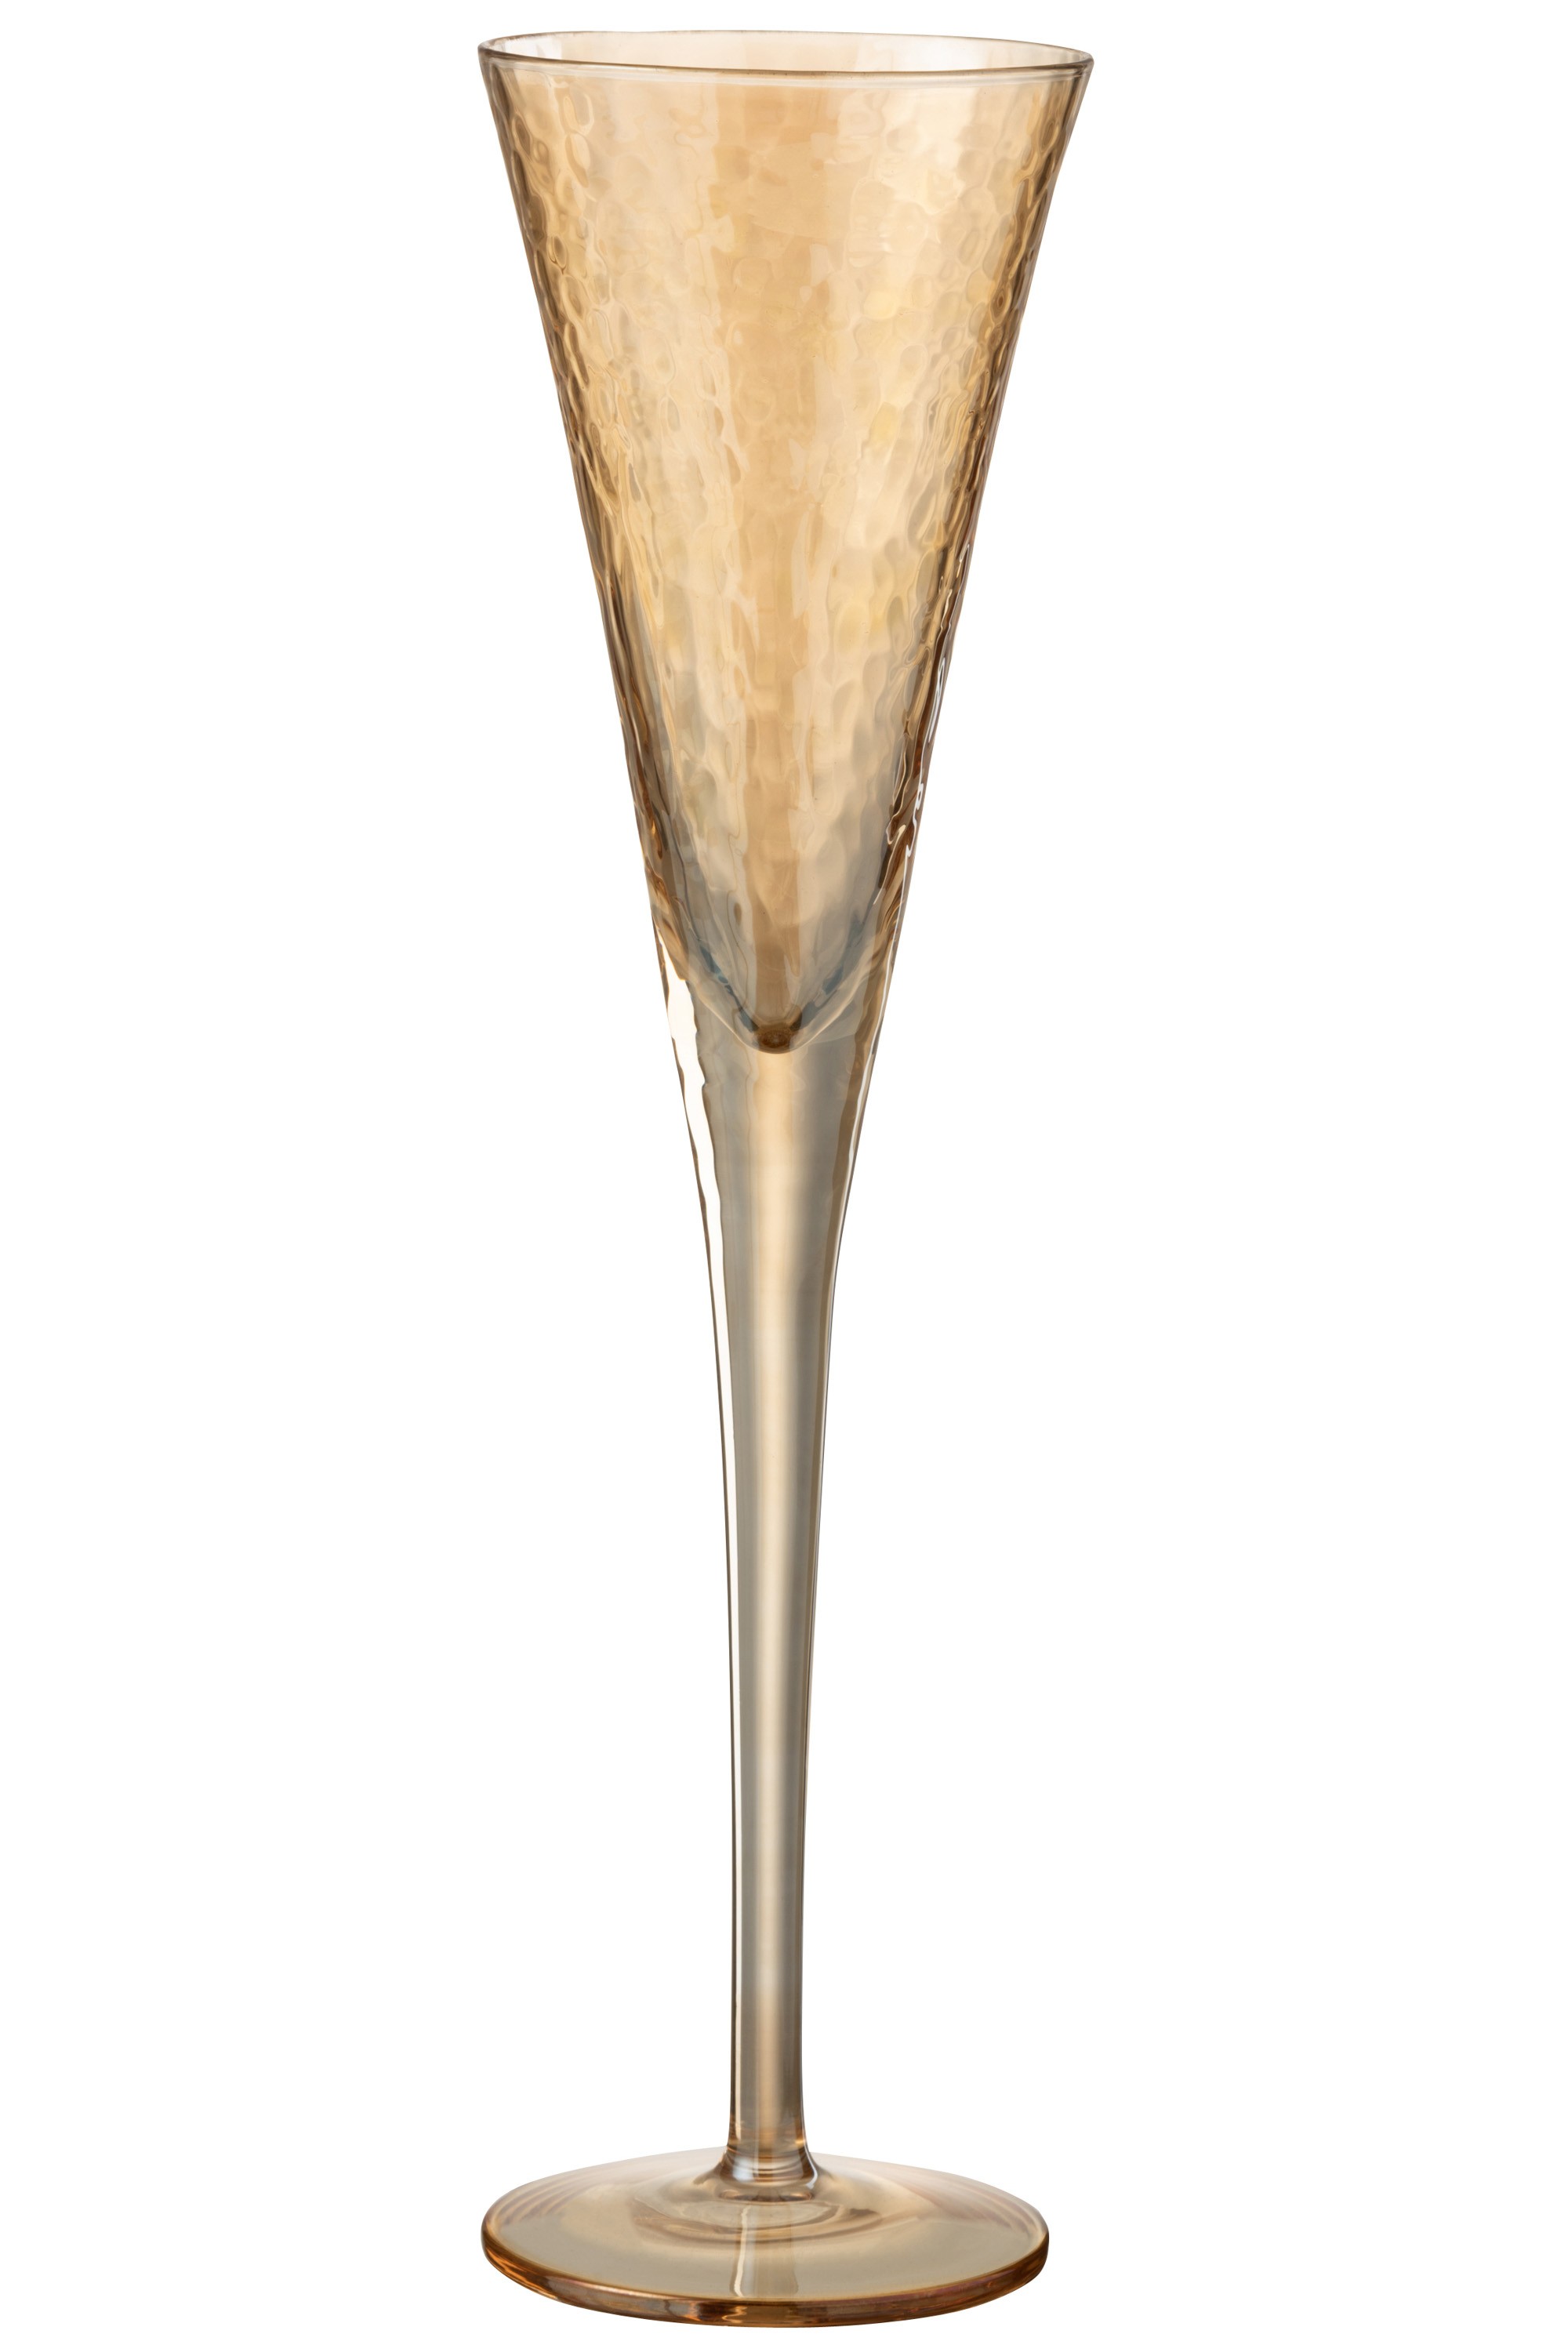 Jantarová sklenička na šampaňské Oil champagne - Ø 7*28 cm 7759